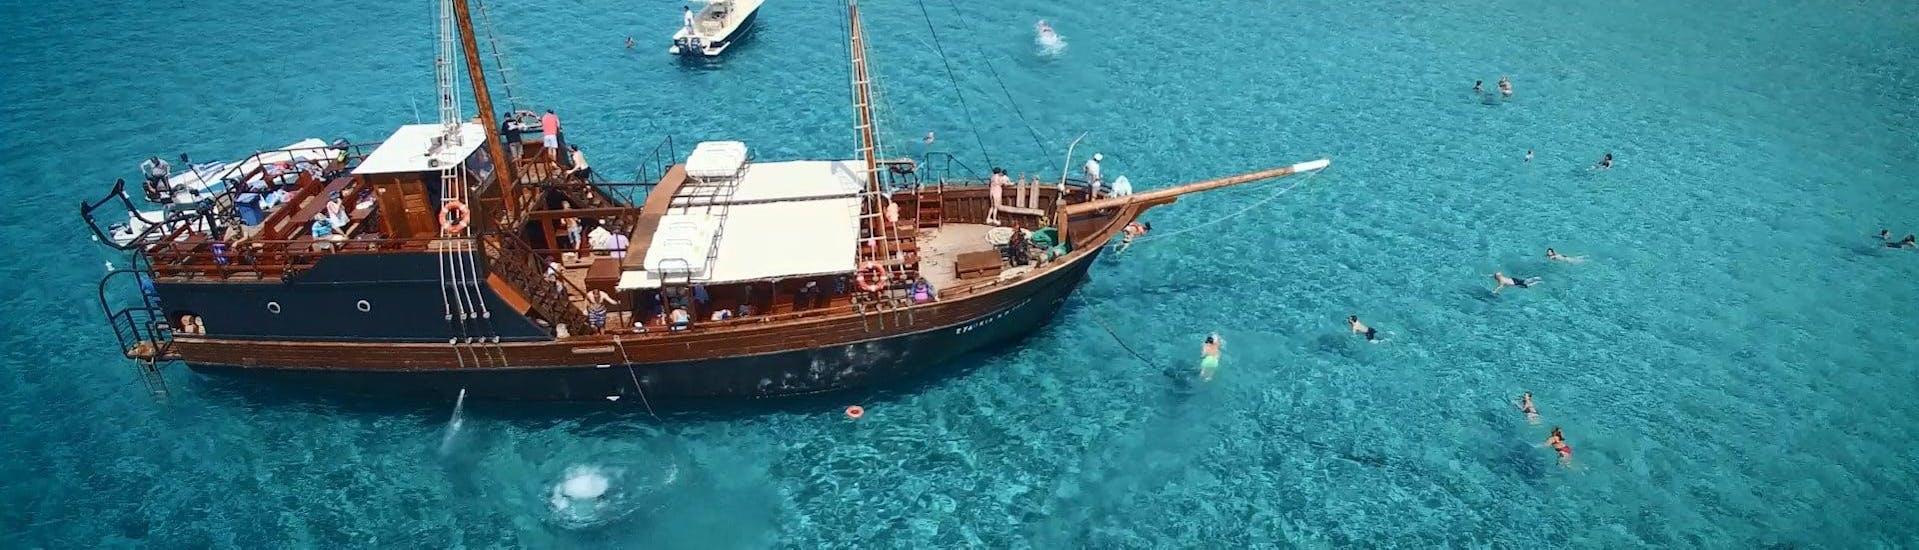 Photo du bateau pirtae utilisé pour les excursions en bateau de Cretan Daily Cruises - Chrissi Islands.